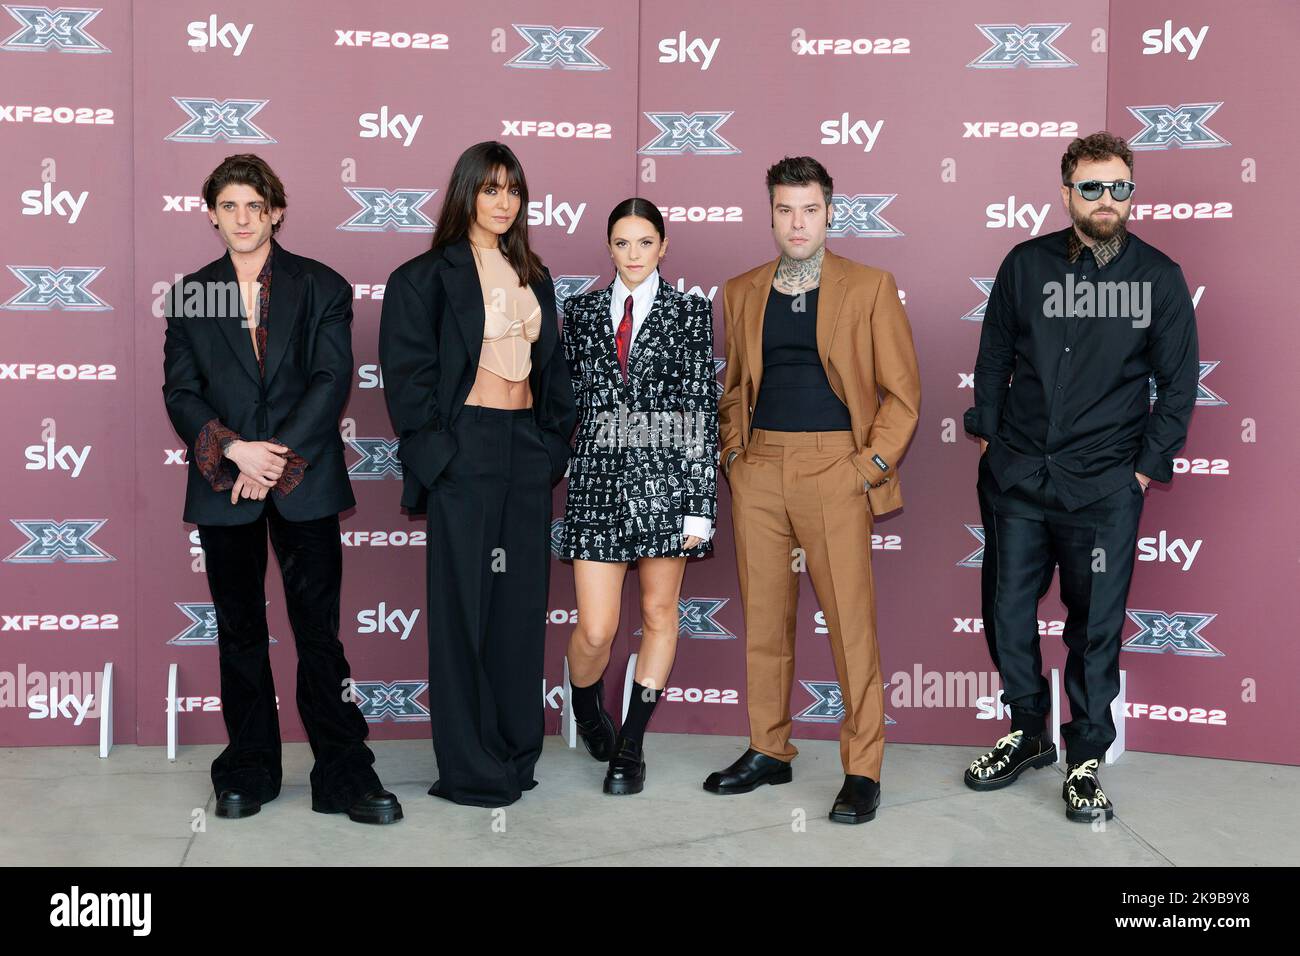 MILANO, ITALIE - OCTOBRE 25: Rkomi, Ambra Angiolini, Francesca Michielin, Fedez, Dargen d'Amico assister à la photo-appel X Factor Live au théâtre Repower Banque D'Images